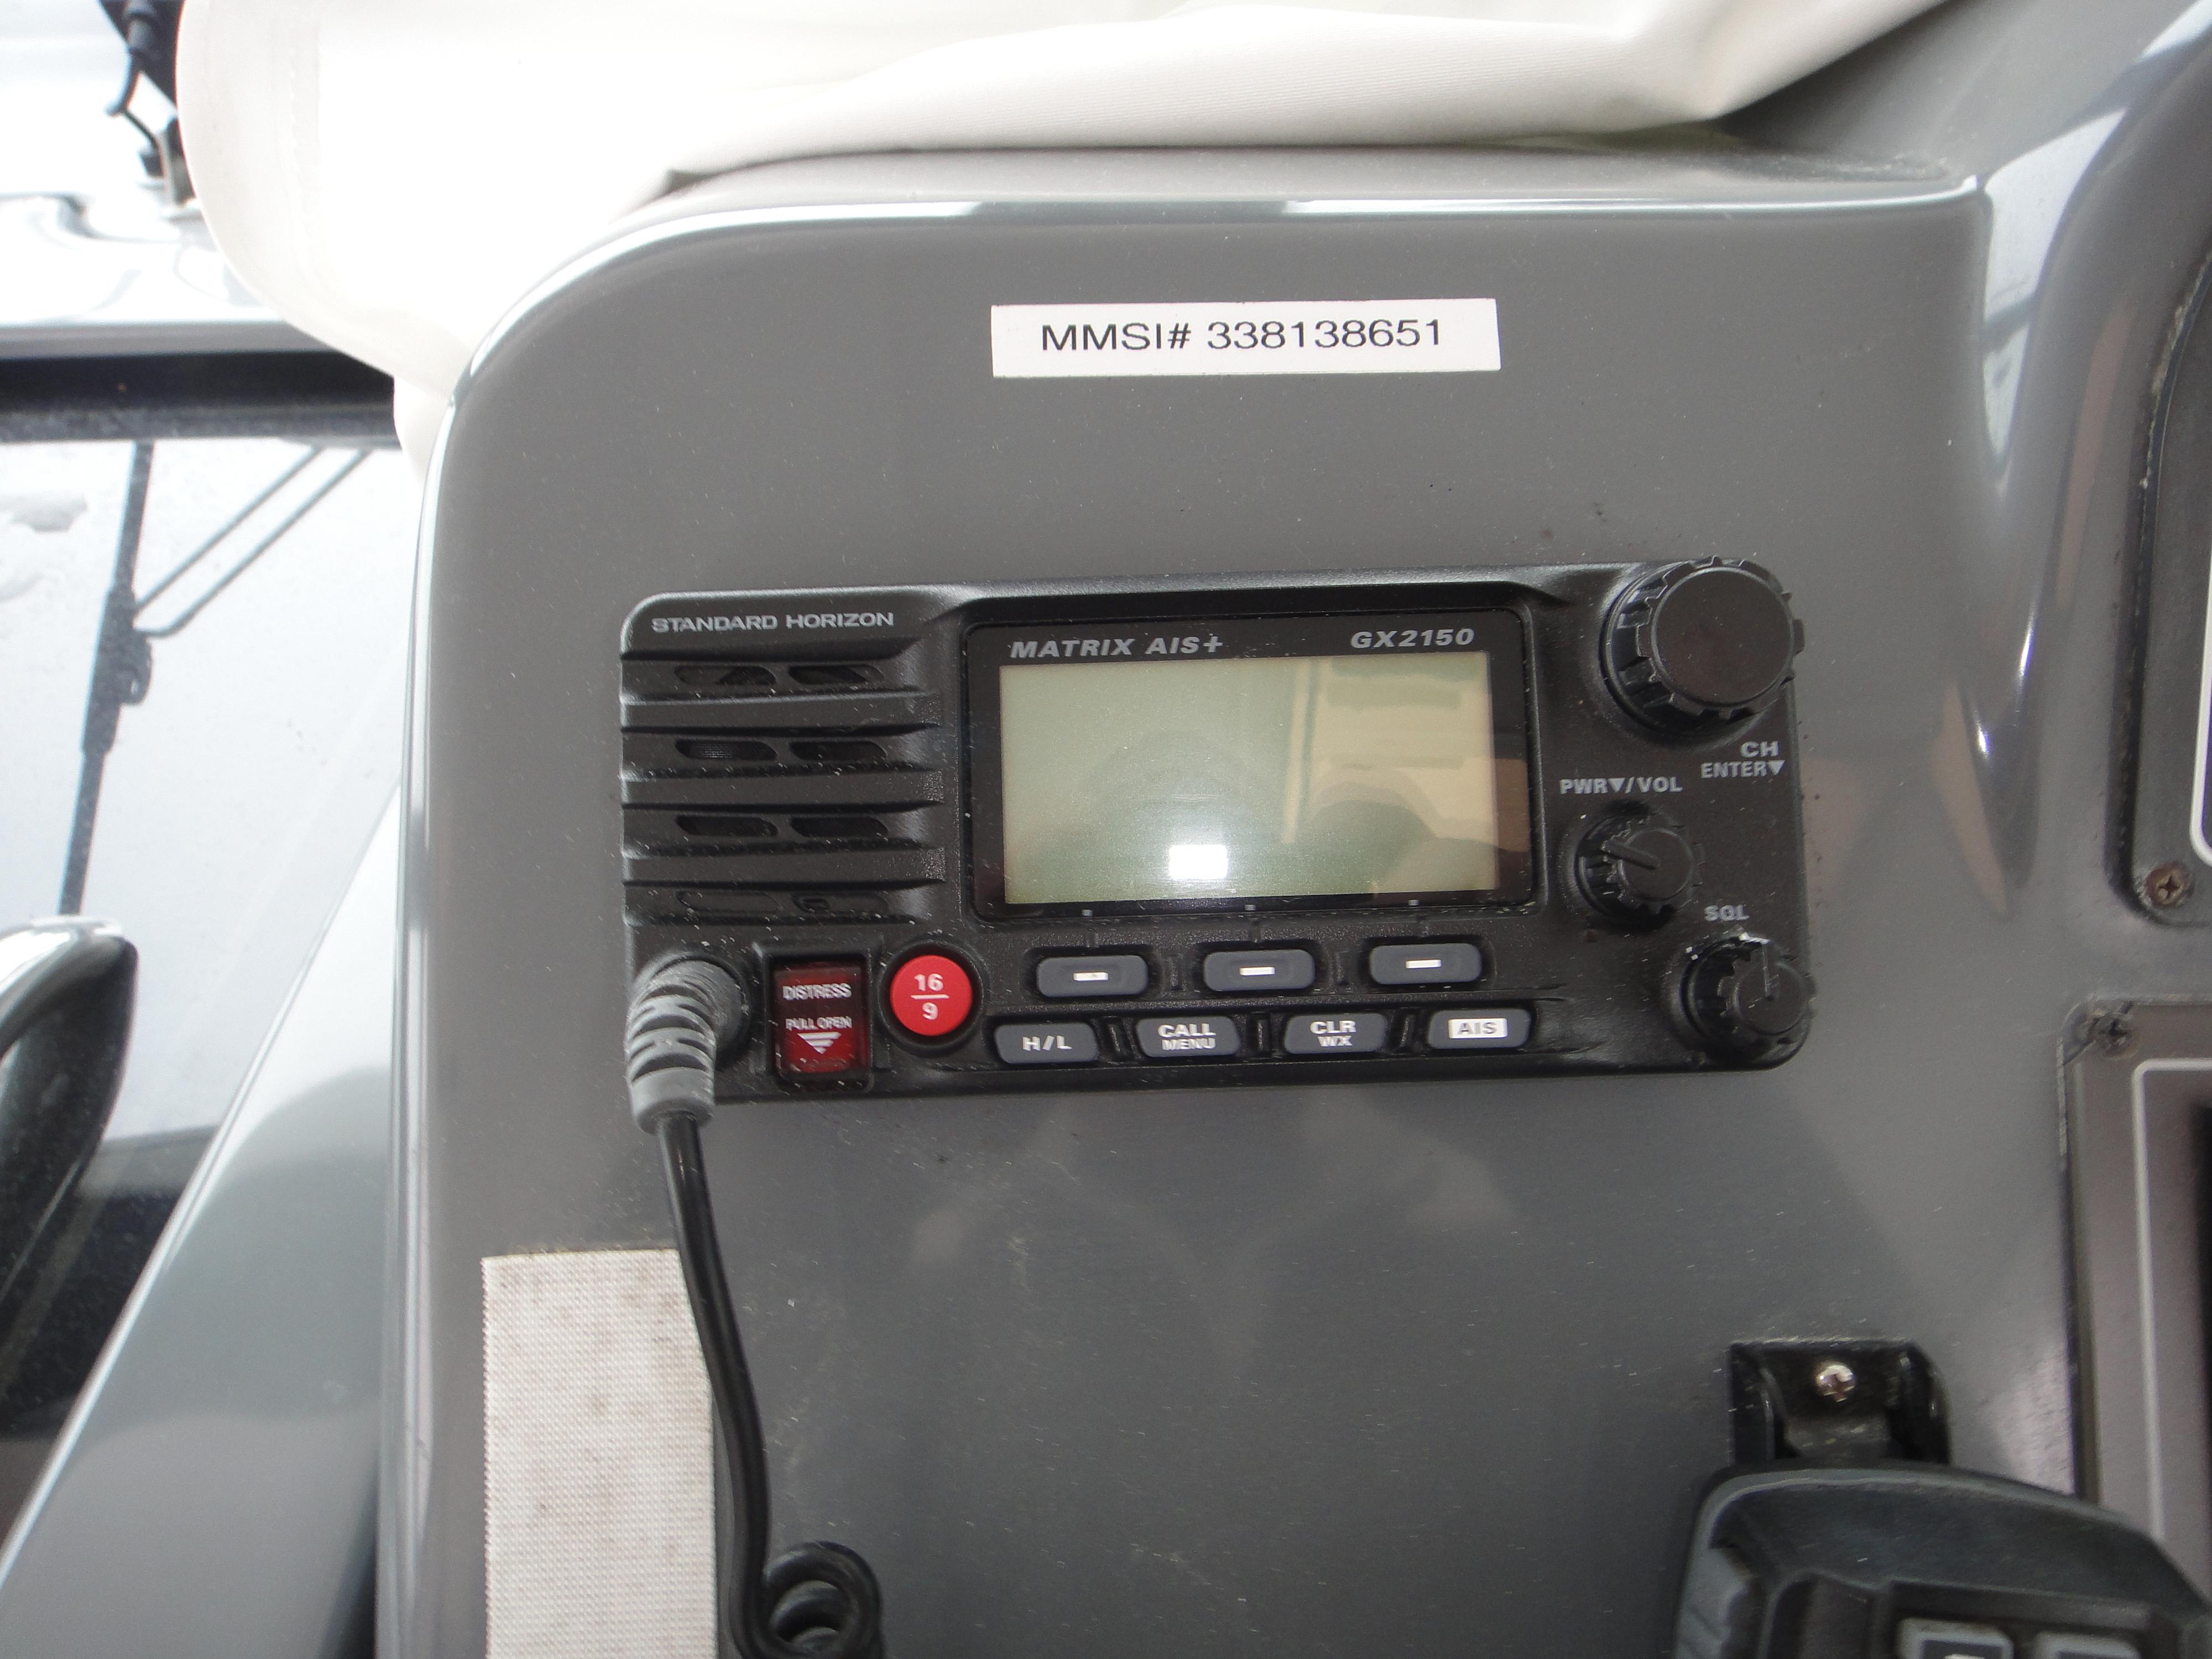 Standard Horizon GX-2150 VHF